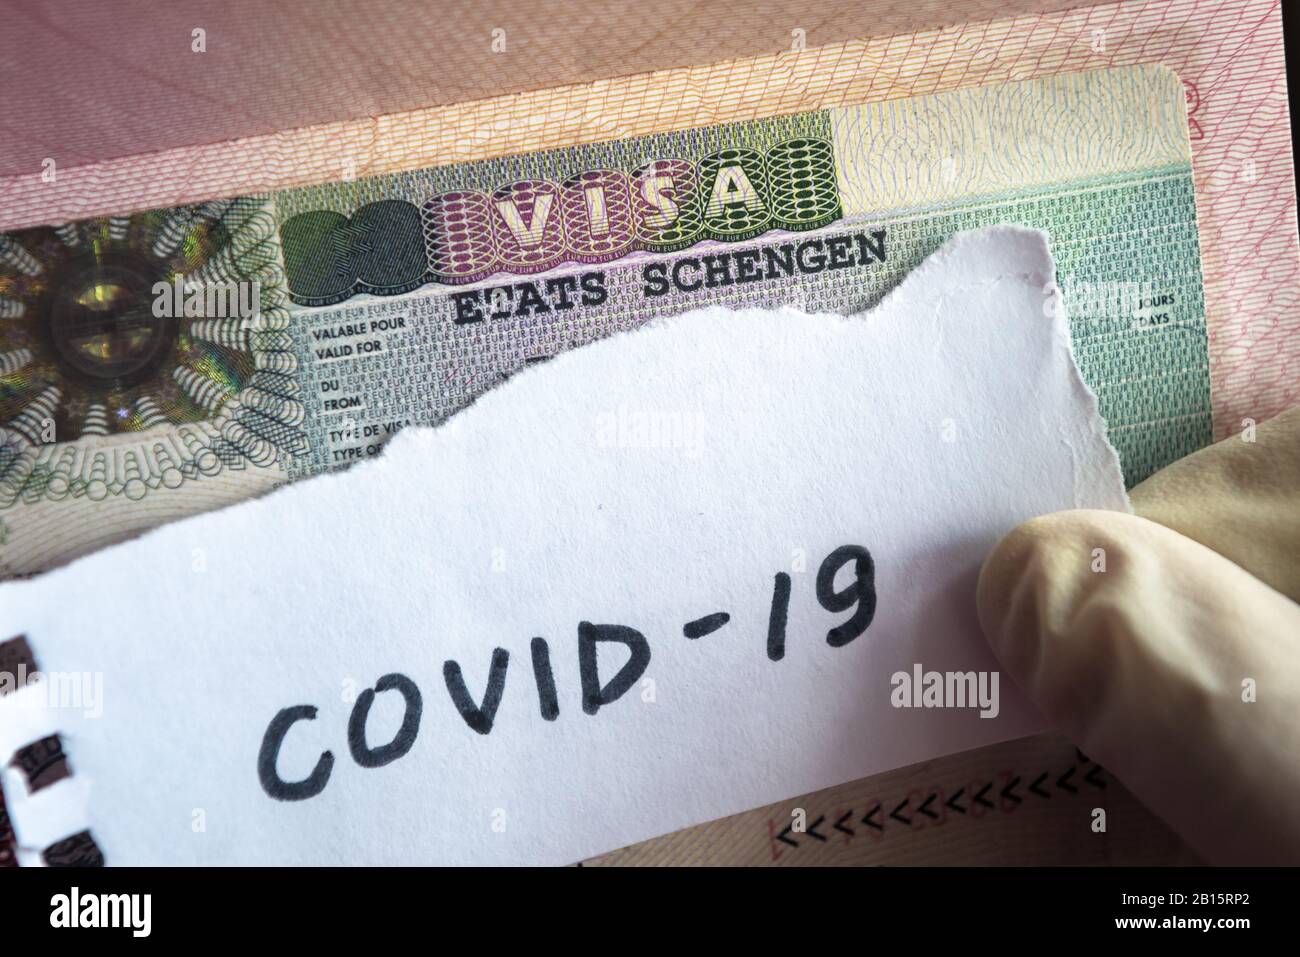 Concepto de coronavirus. Tenga en cuenta el coronavirus COVID-19 y el visado Schengen en el pasaporte. Control fronterizo y cuarentena de turistas infectados con coronavirus. Nov Foto de stock